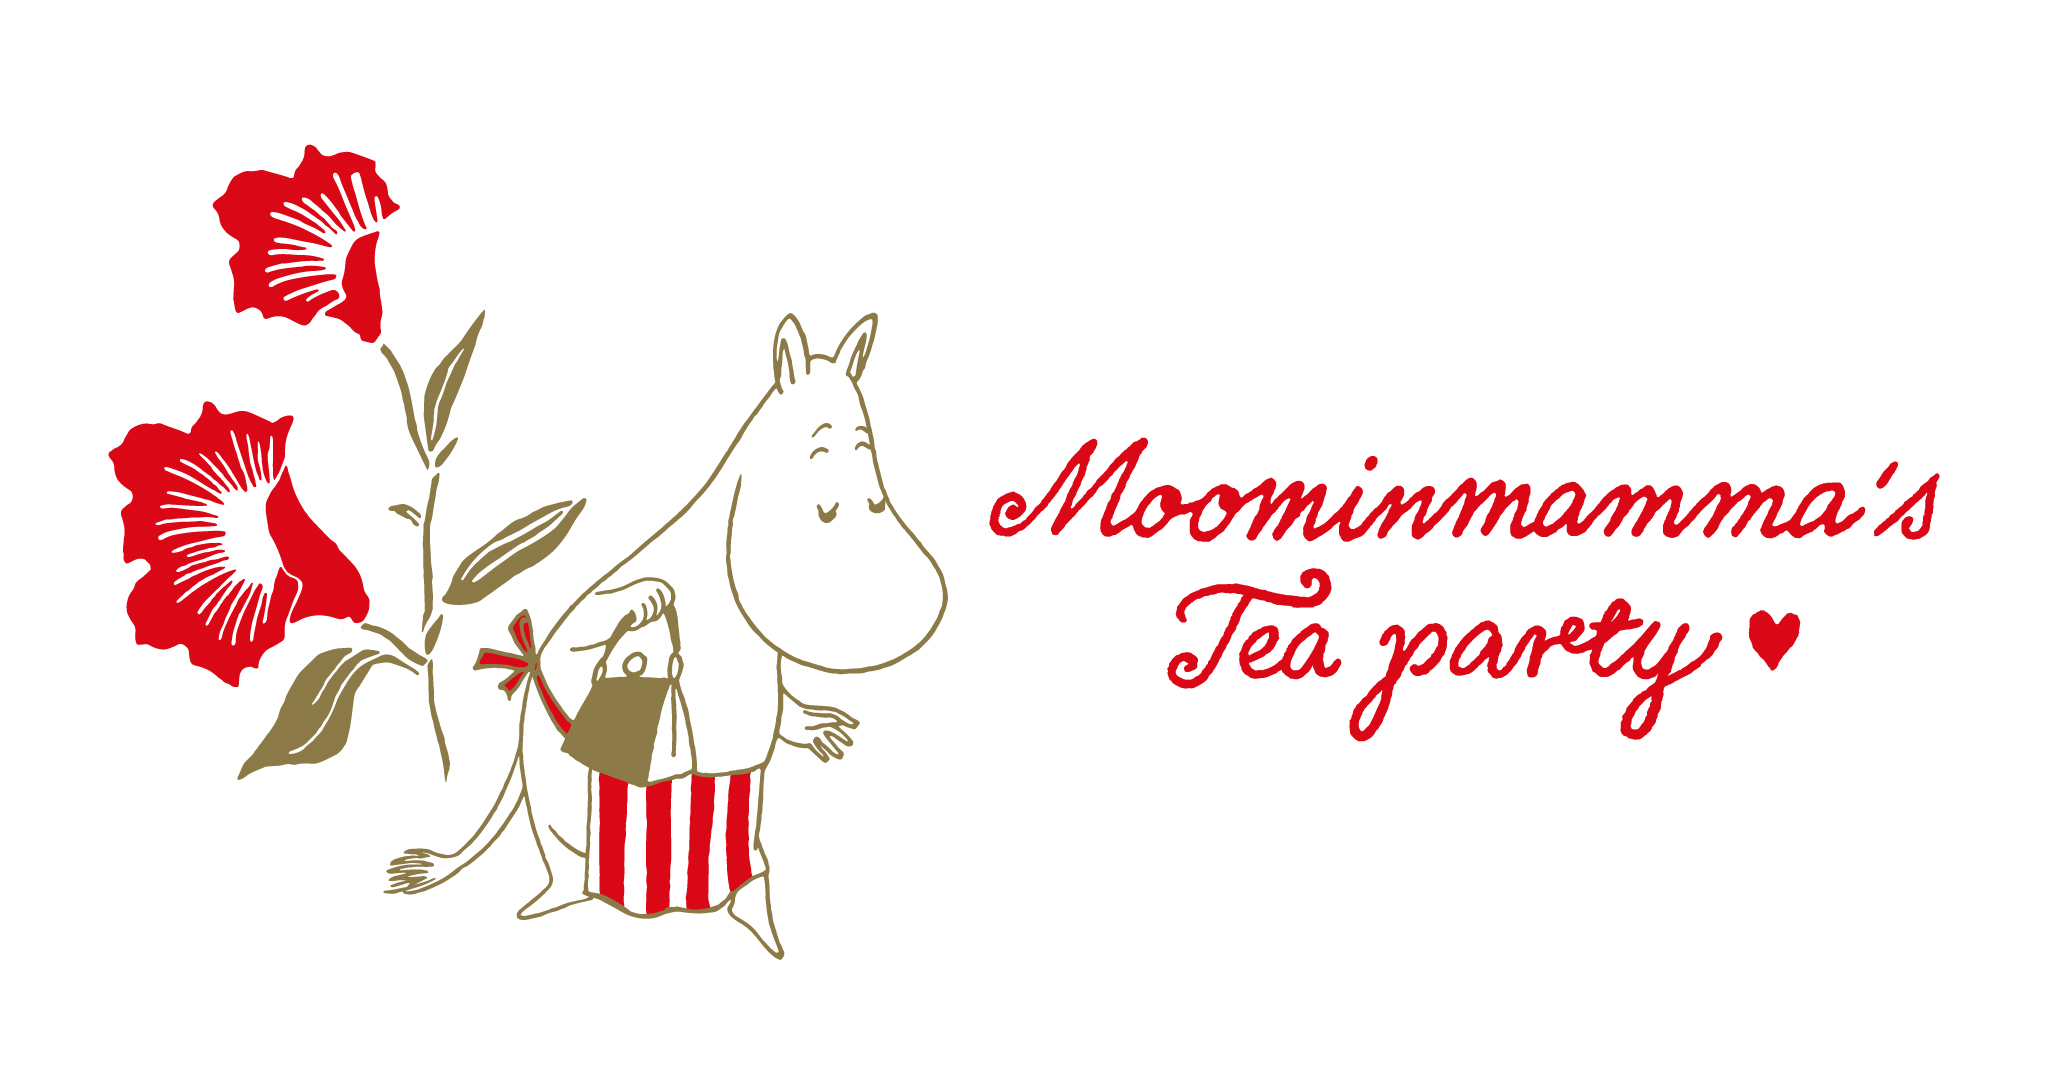 ムーミンママが主役の新シリーズ “Moominmamma's Tea party”登場